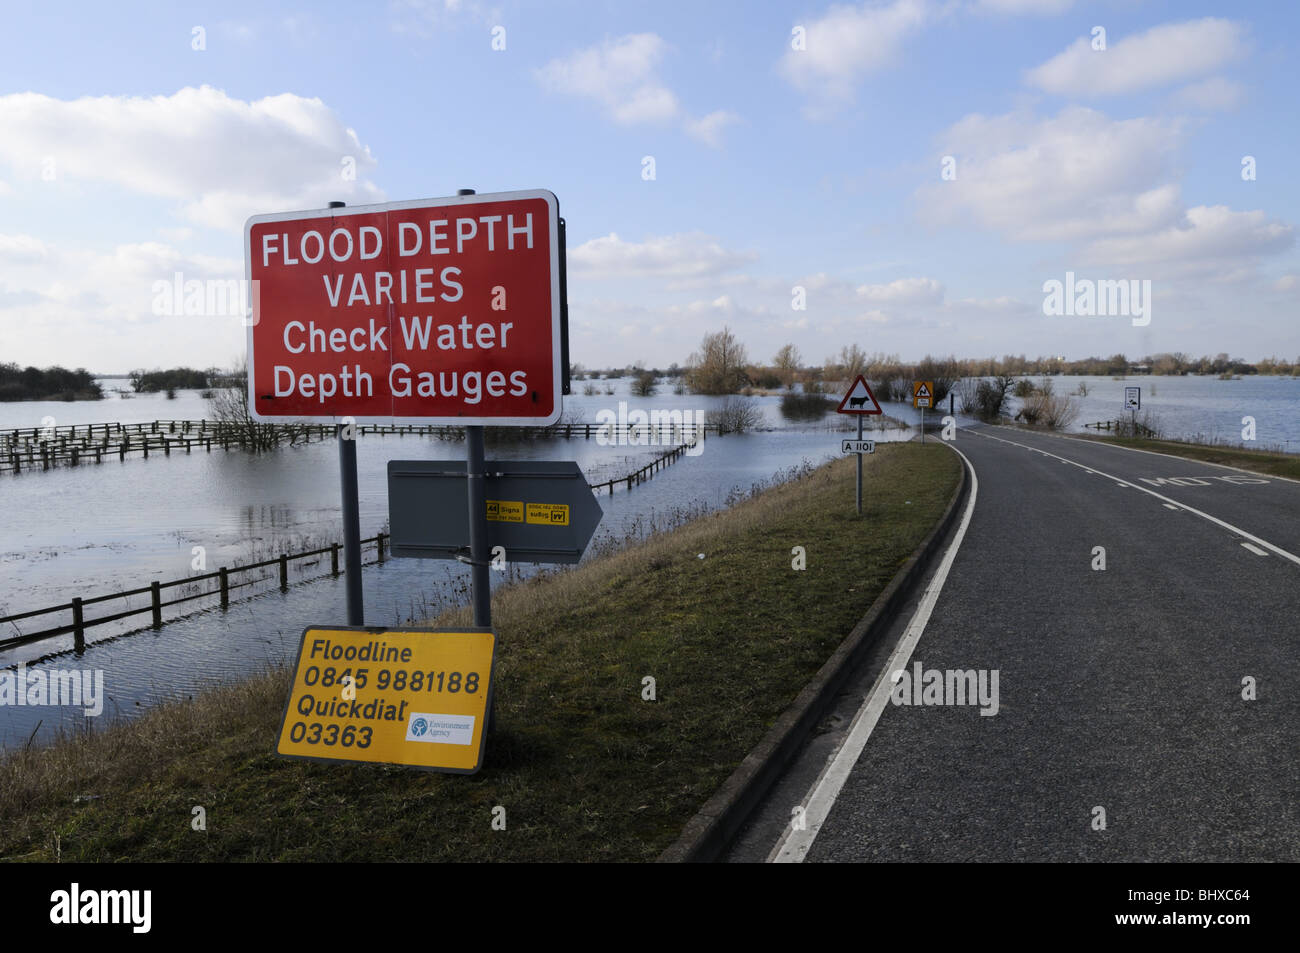 La profondeur varie d'inondation avertissement par une route inondée A1101 à Welney Laver, Norfolk, Angleterre, Royaume-Uni Banque D'Images